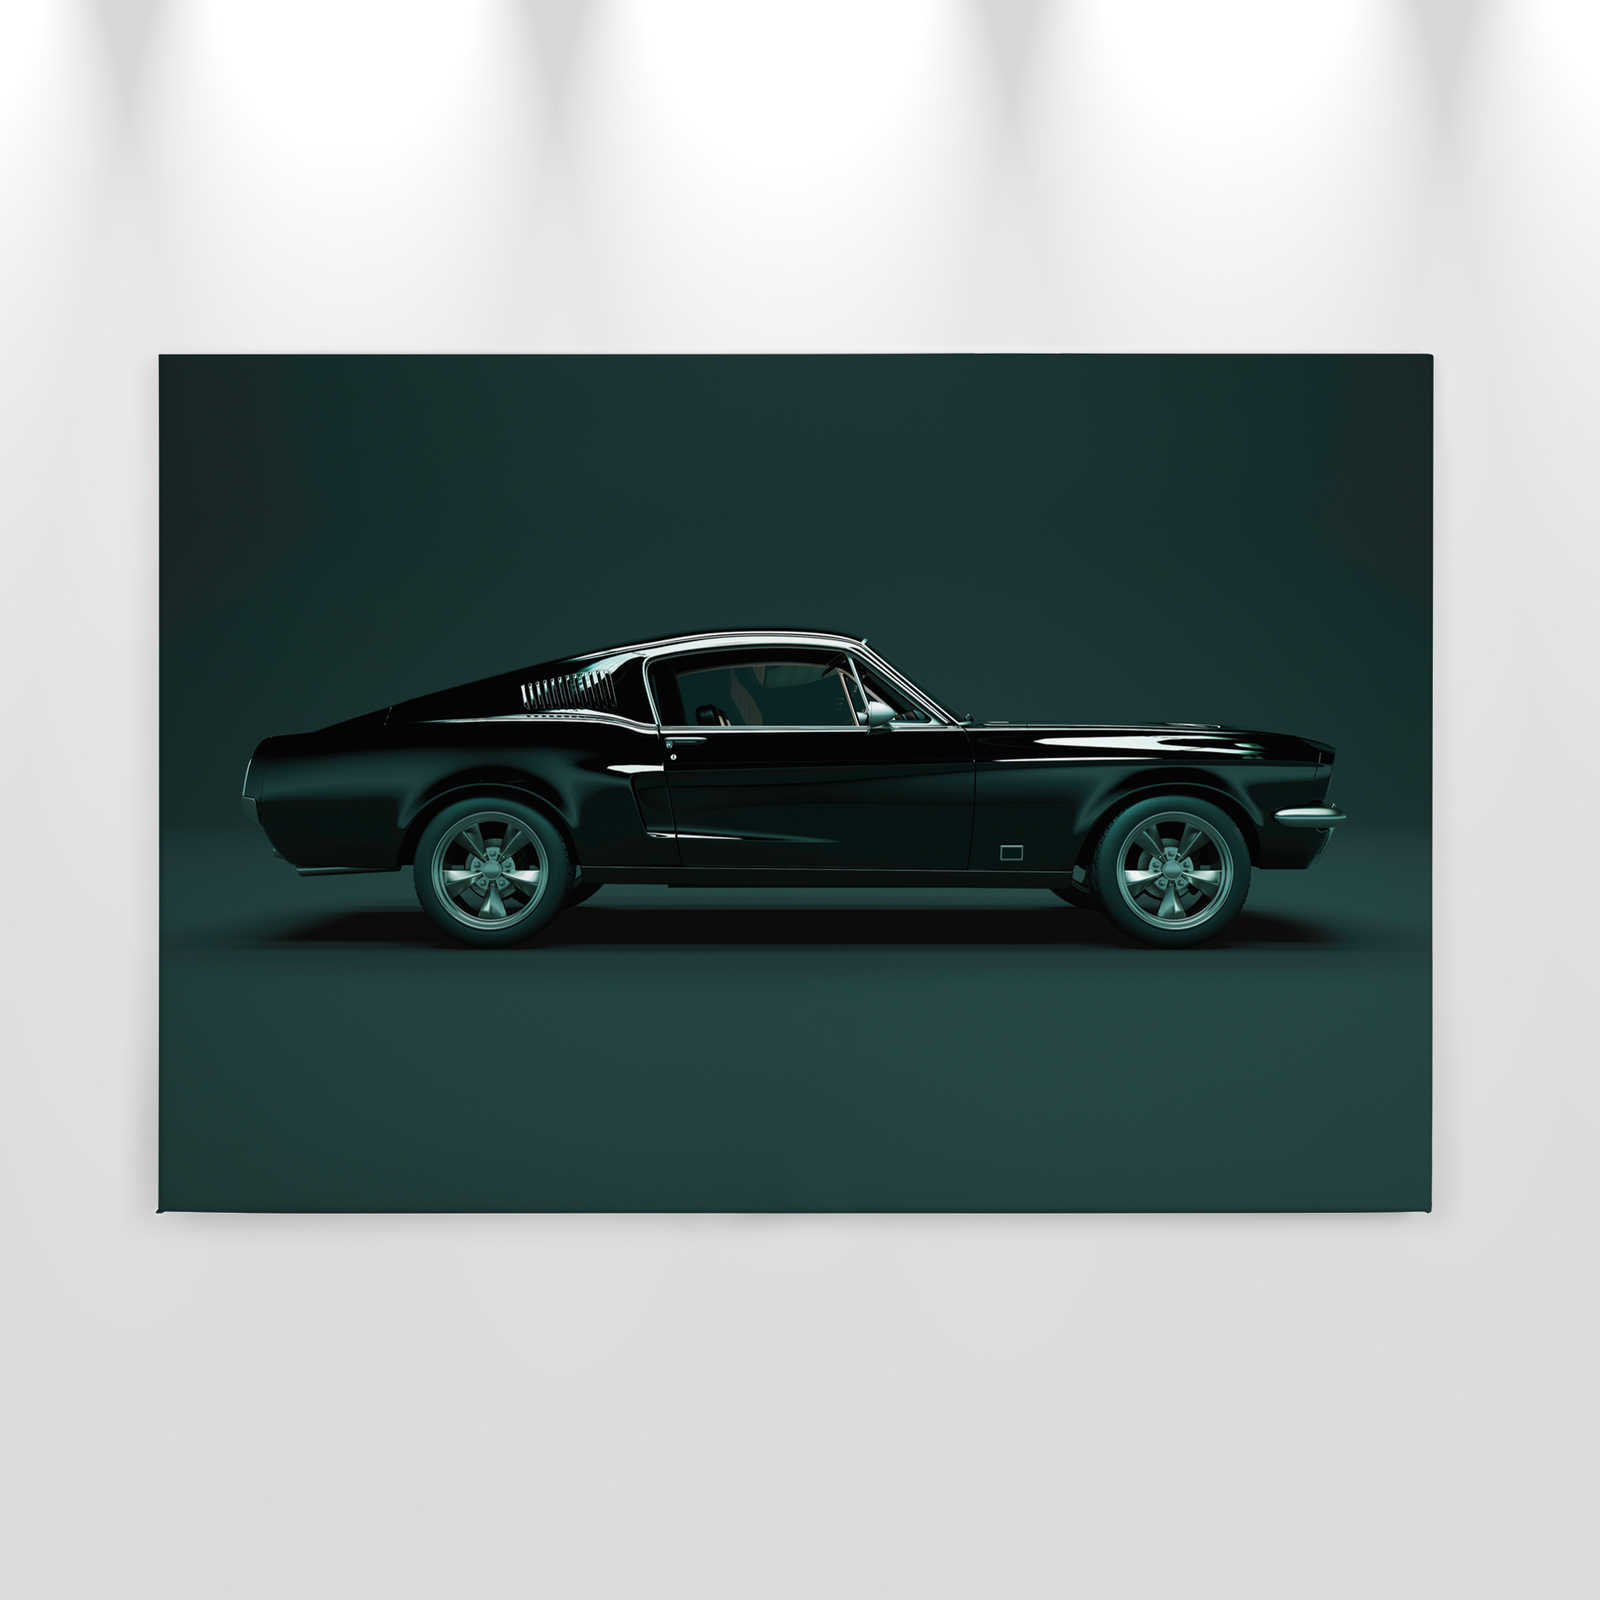             Mustang 1 - Canvas schilderij, zijaanzicht Mustang, vintage - 0.90 m x 0.60 m
        